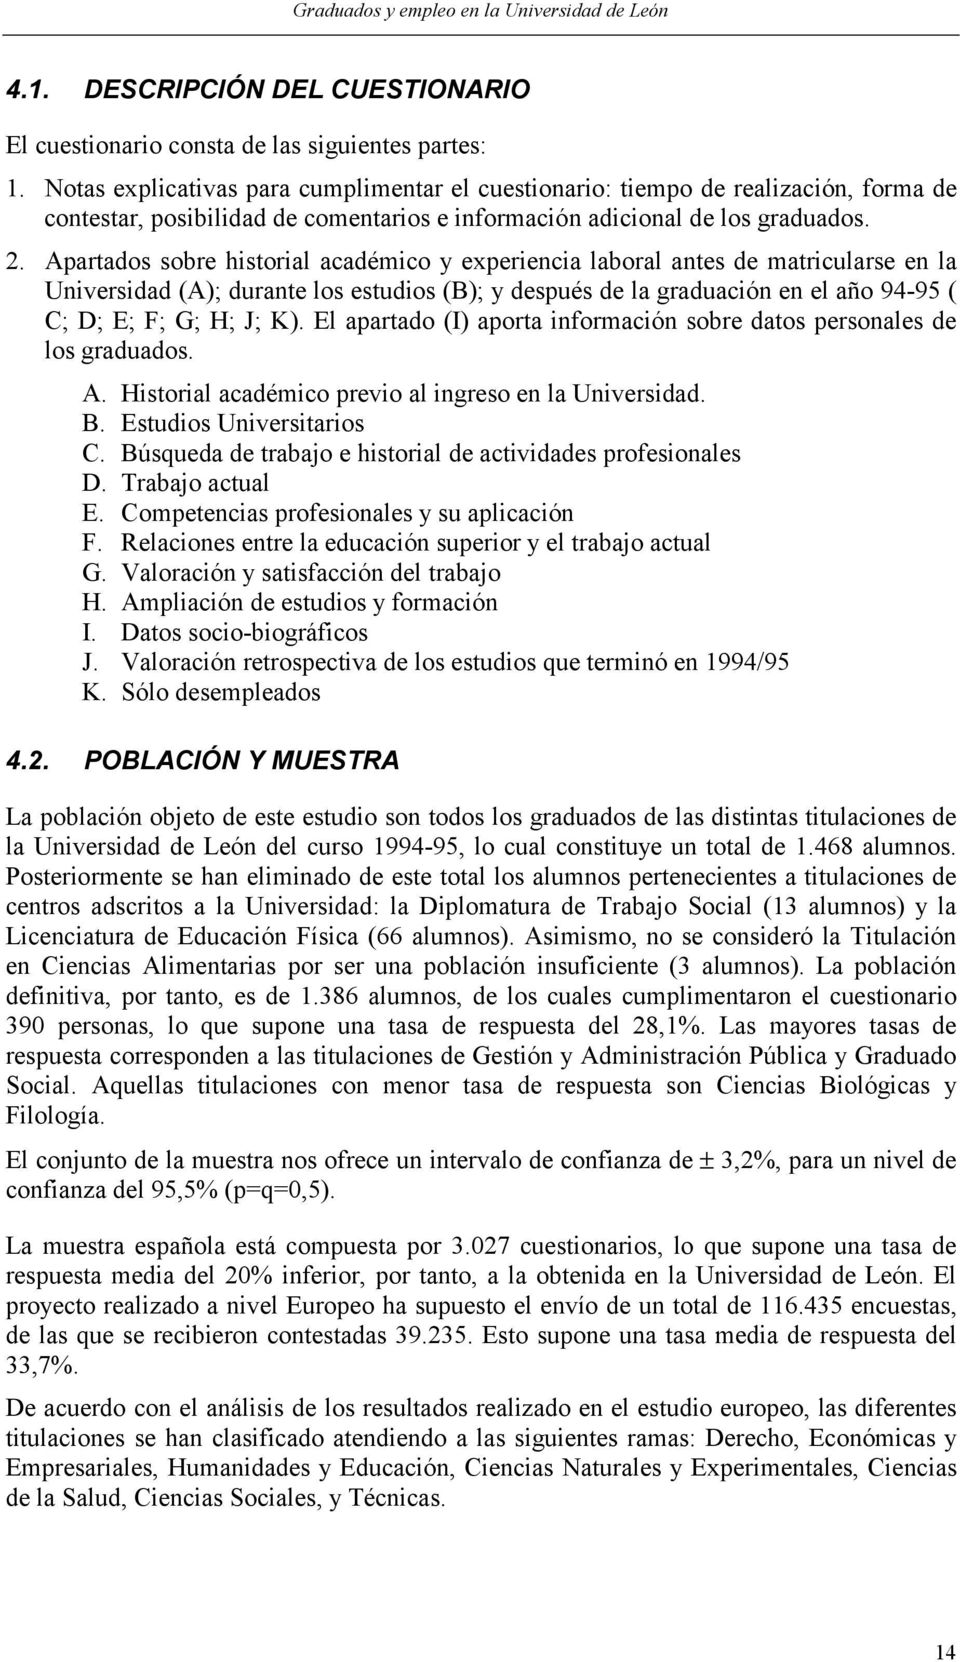 Apartados sobre historial académico y experiencia laboral antes de matricularse en la Universidad (A); durante los estudios (B); y después de la graduación en el año 94-95 ( C; D; E; F; G; H; J; K).